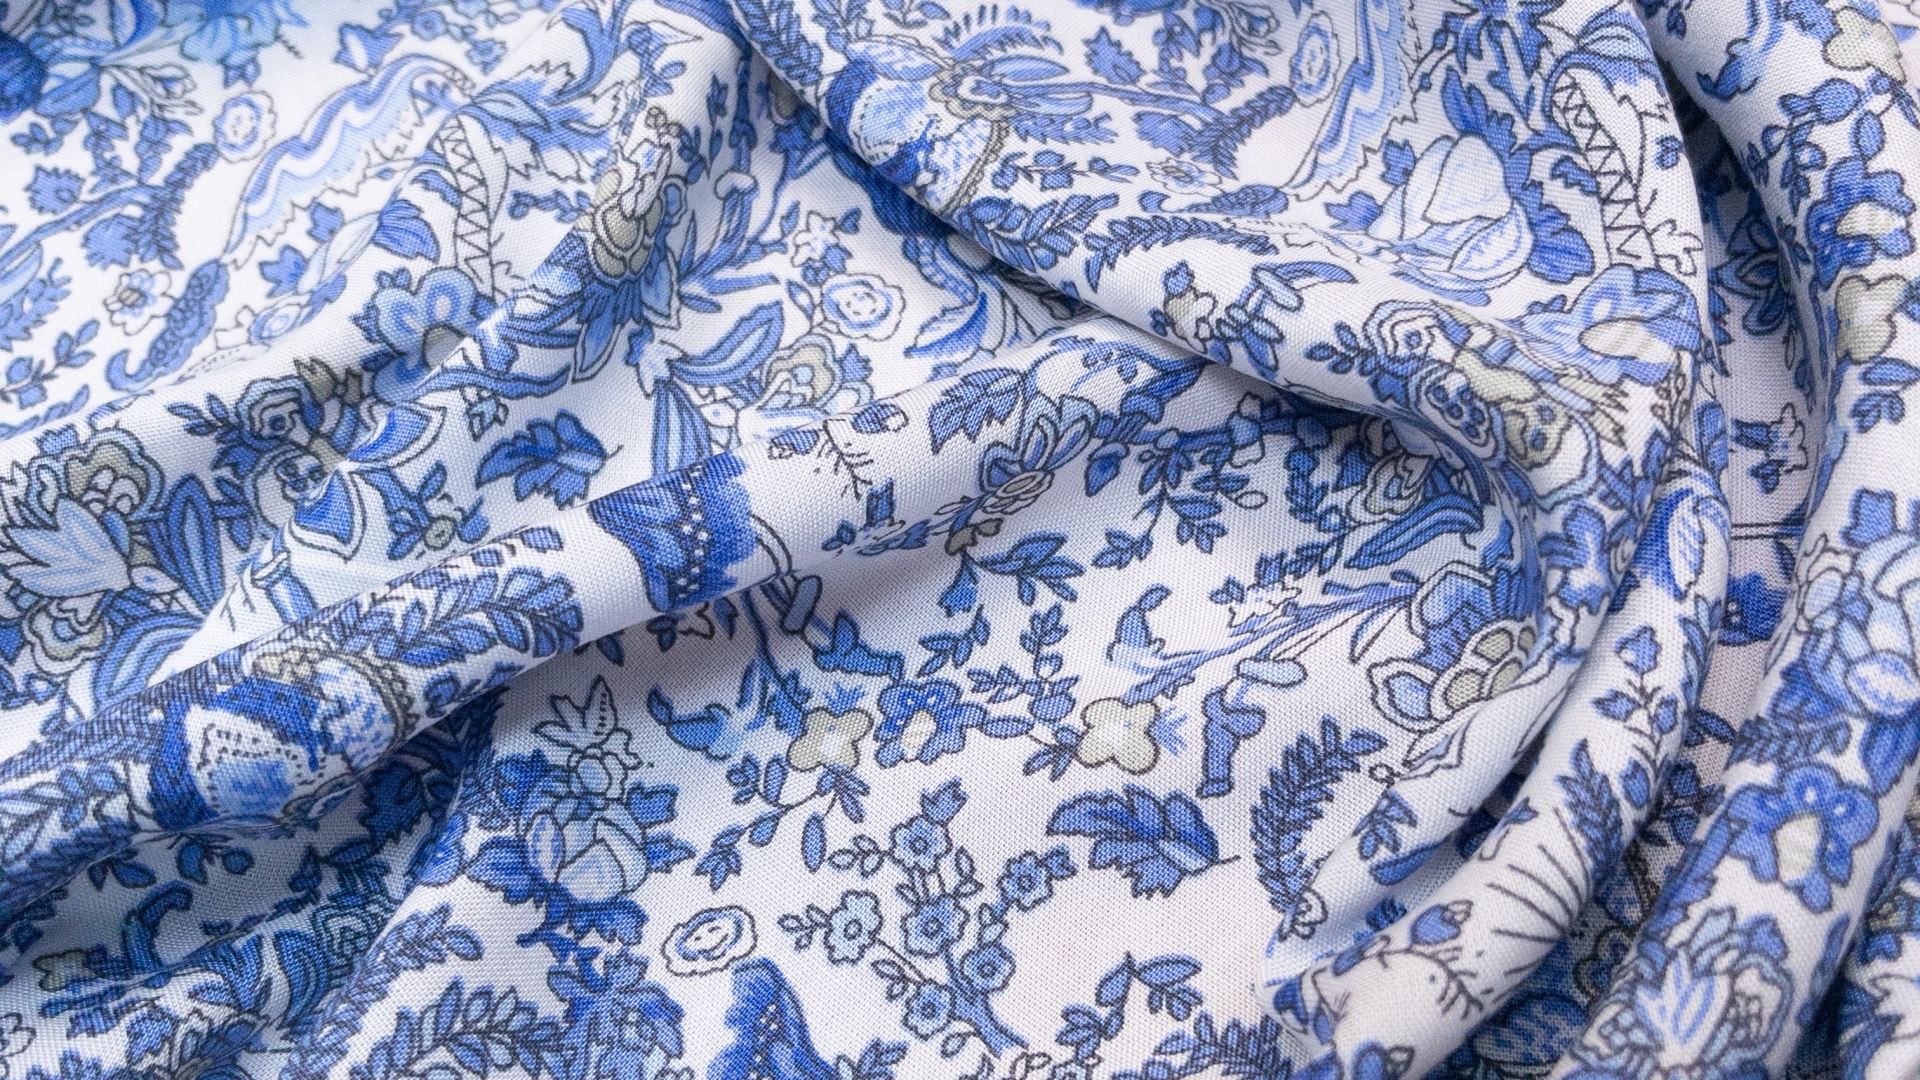 Штапель с нежным голубым цветочным принтом на белом фоне. Нить тонкая, плотно прилегающая, за счет чего полотно тонкое, летящее и совершенно не рыхлое. Подходит для пошива рубашек и легких летних платьев.